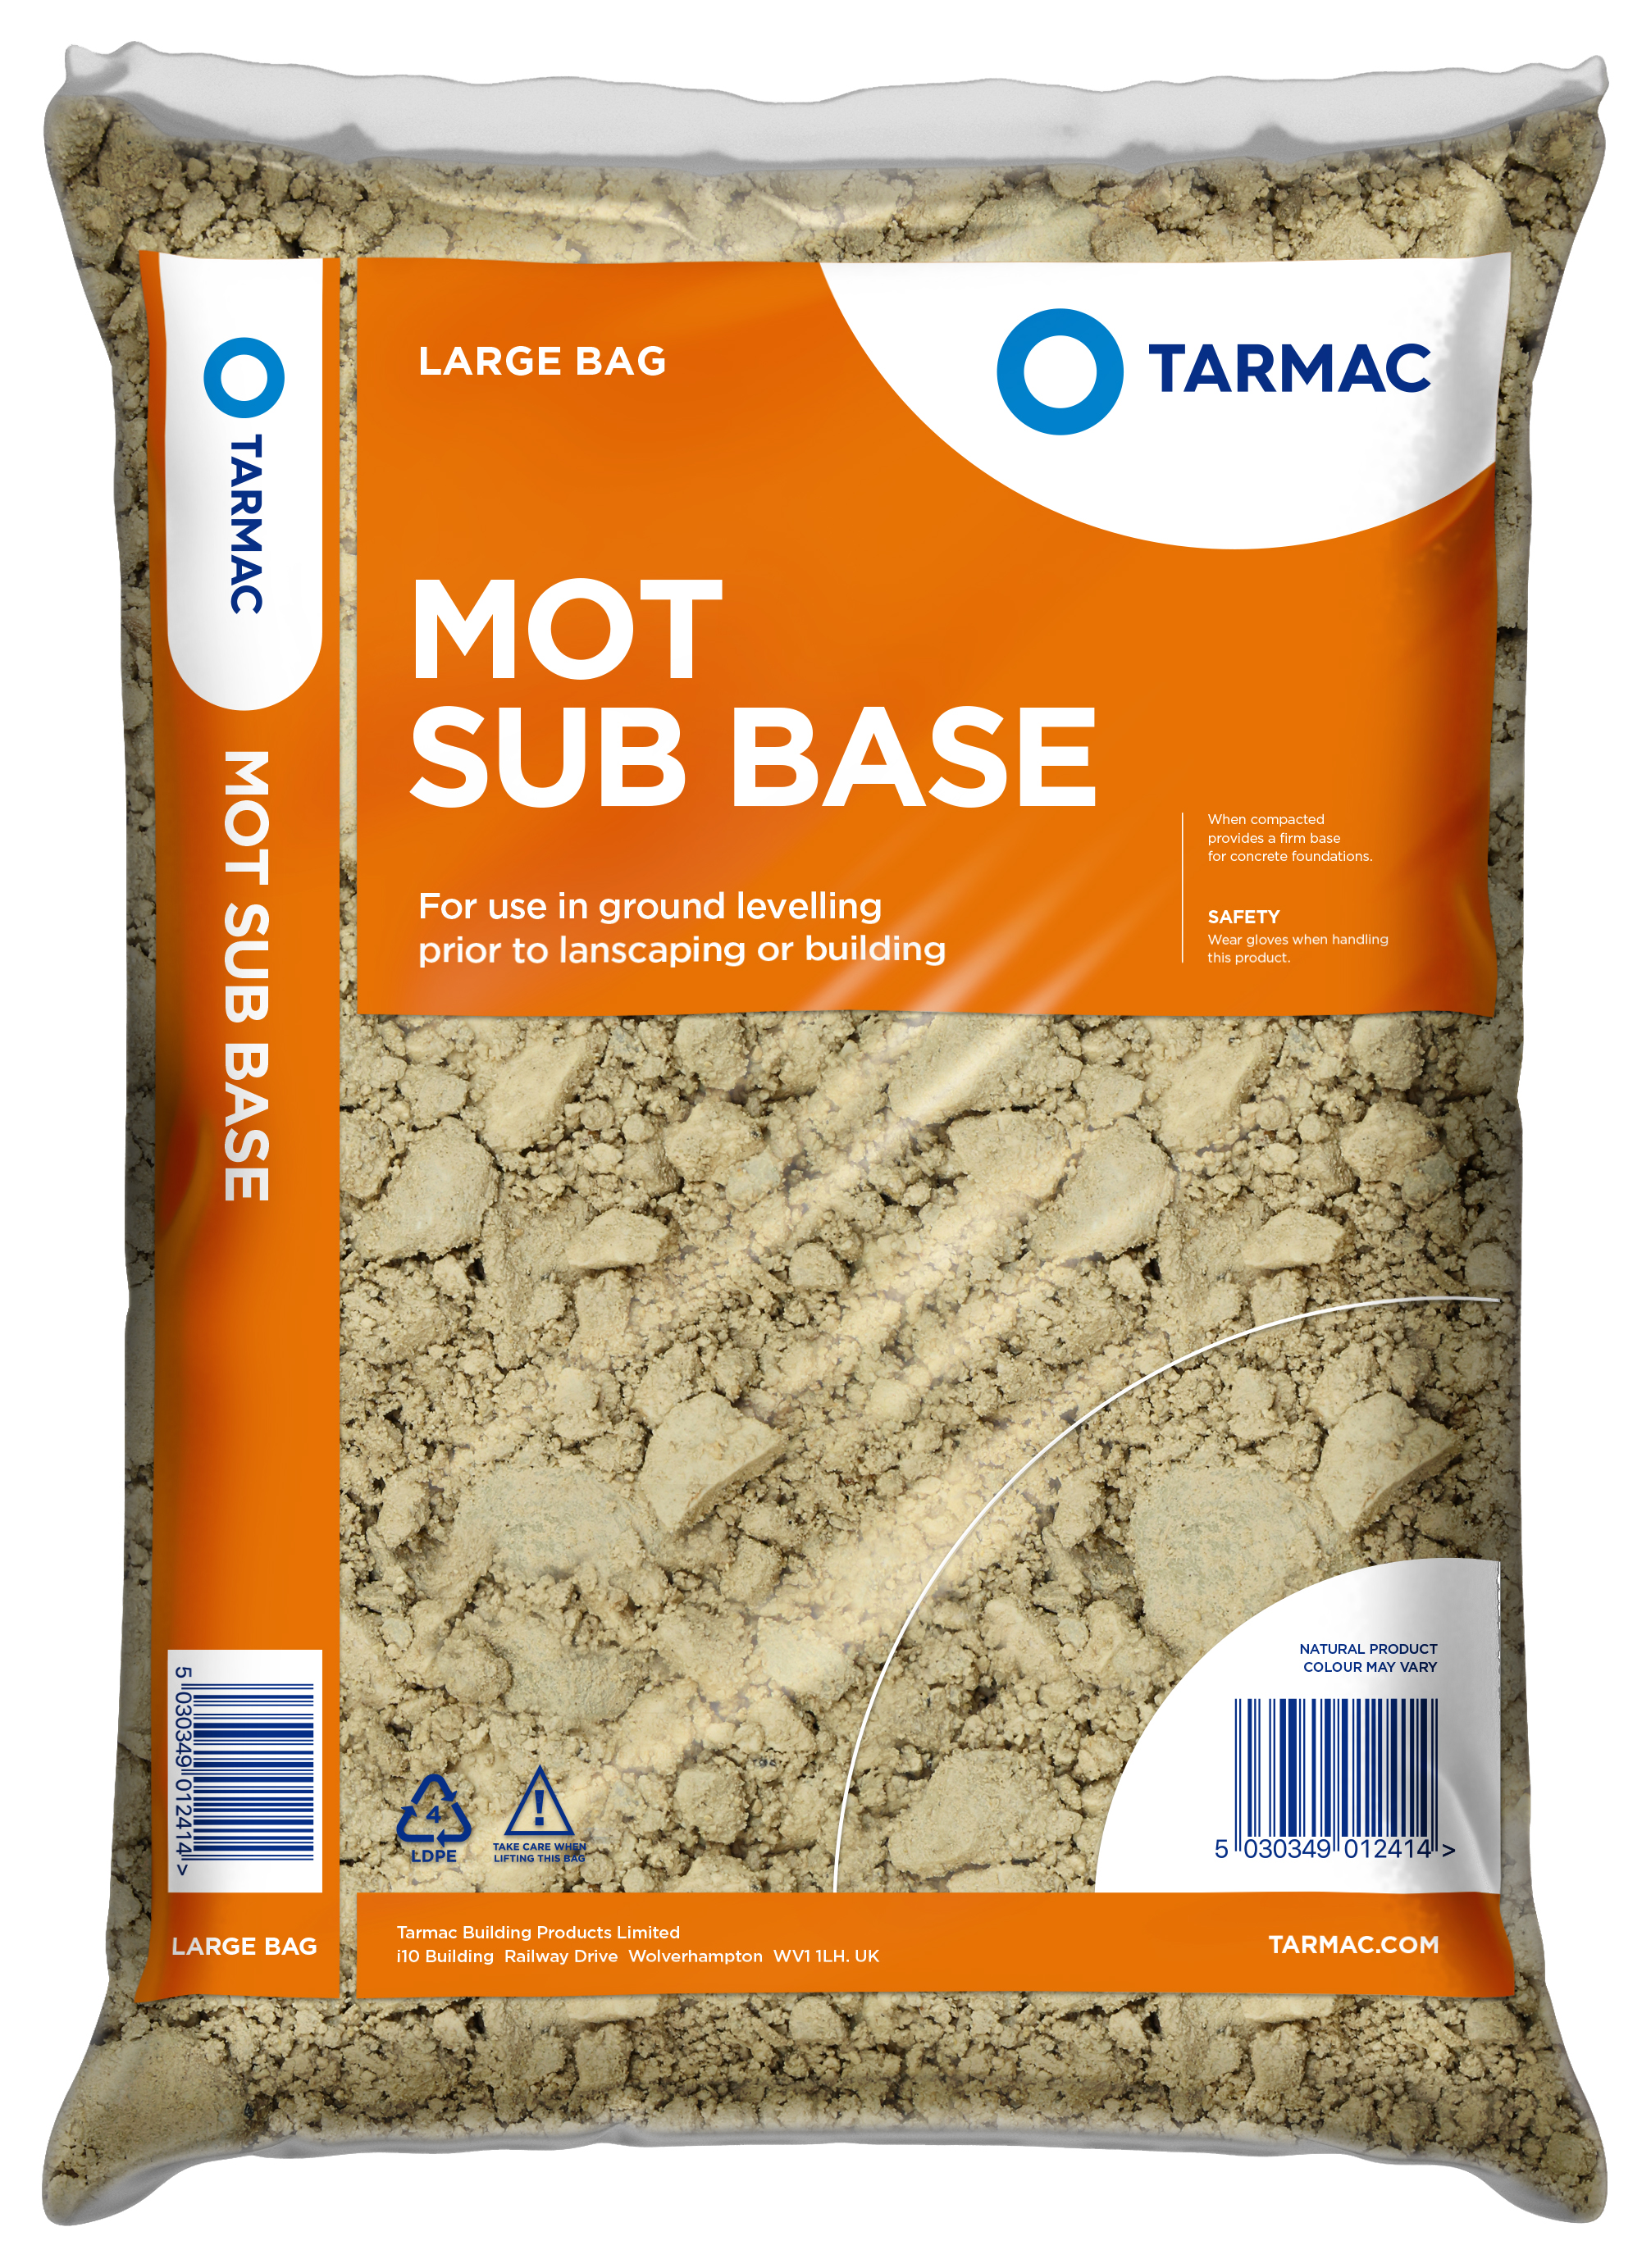 Image of Tarmac Granular Sub Base Mot 1 - Major Bag